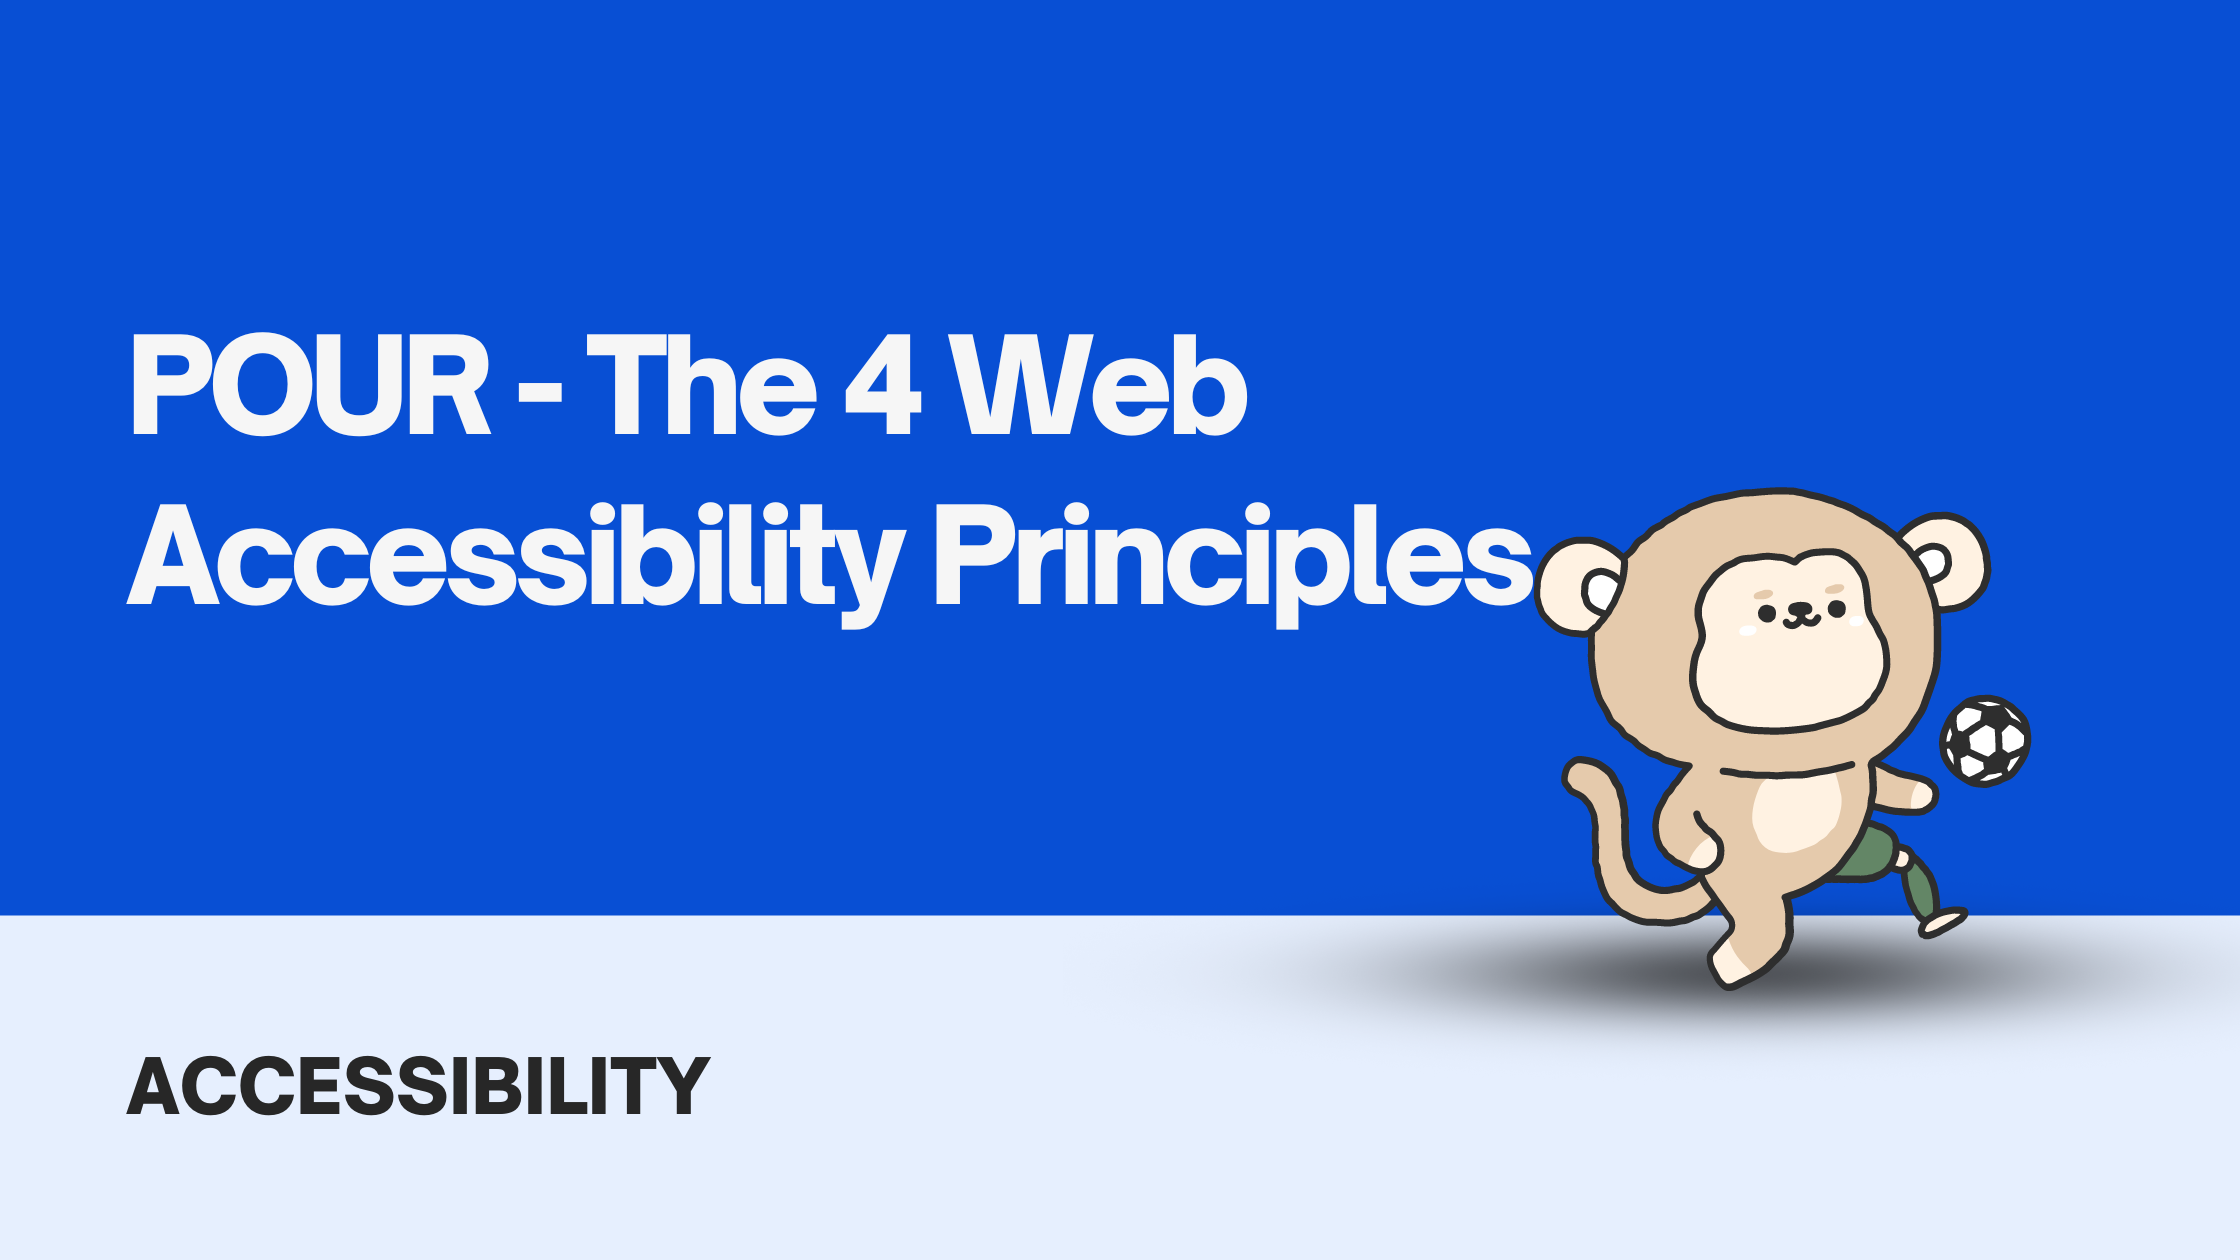 POUR - The 4 Web Accessibility Principles